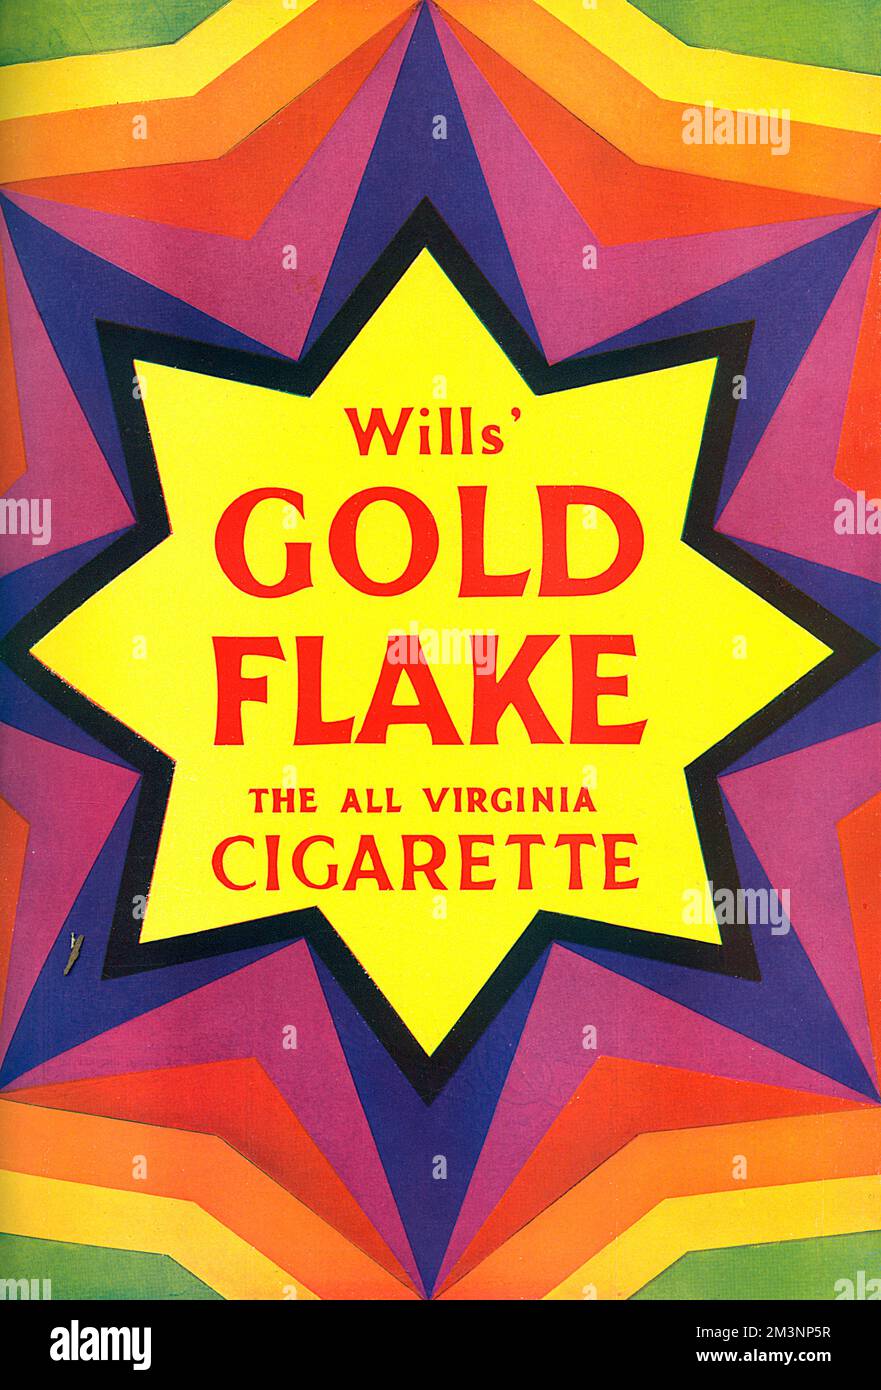 Un anuncio llamativo por Wills Gold Flake, el cigarrillo All Virginia. Fecha: 1928 Foto de stock